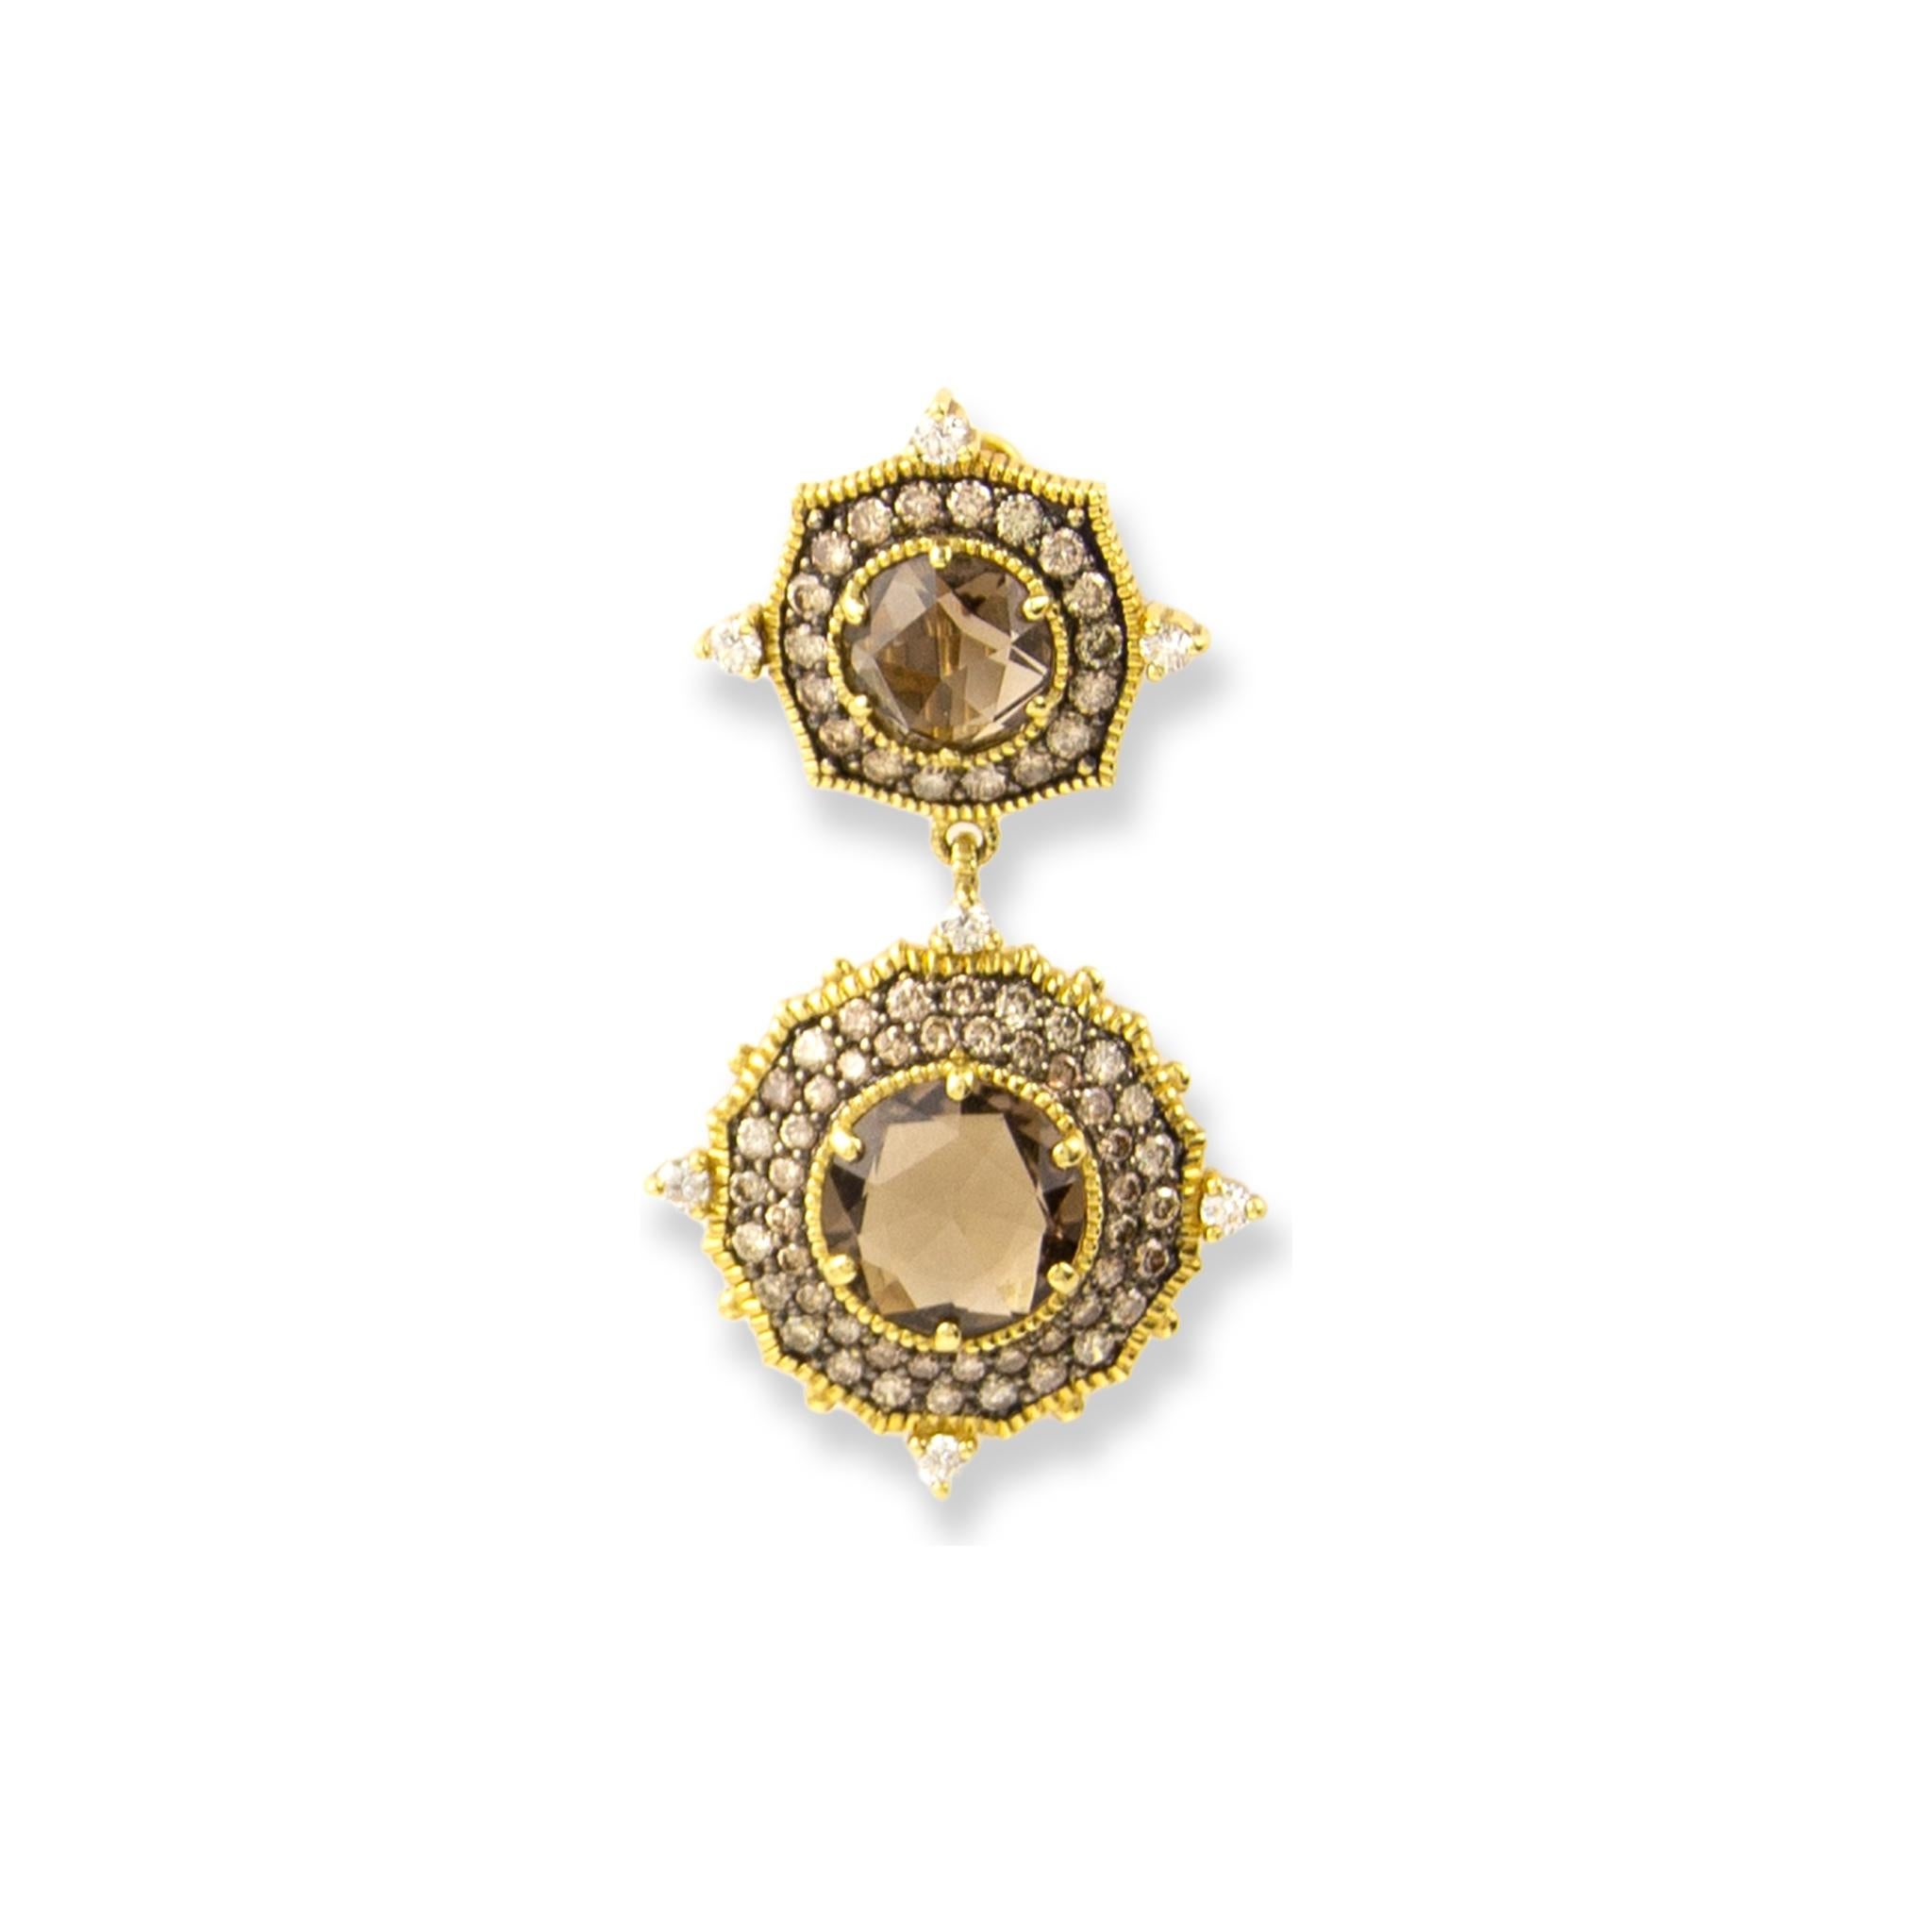 Boucles d'oreilles Judith Ripka en or jaune 18 carats
Quartz bleu : 9,10ctw
Diamants : 3.15ctw
SKU : JR01014
Prix de vente au détail : 12 600,00